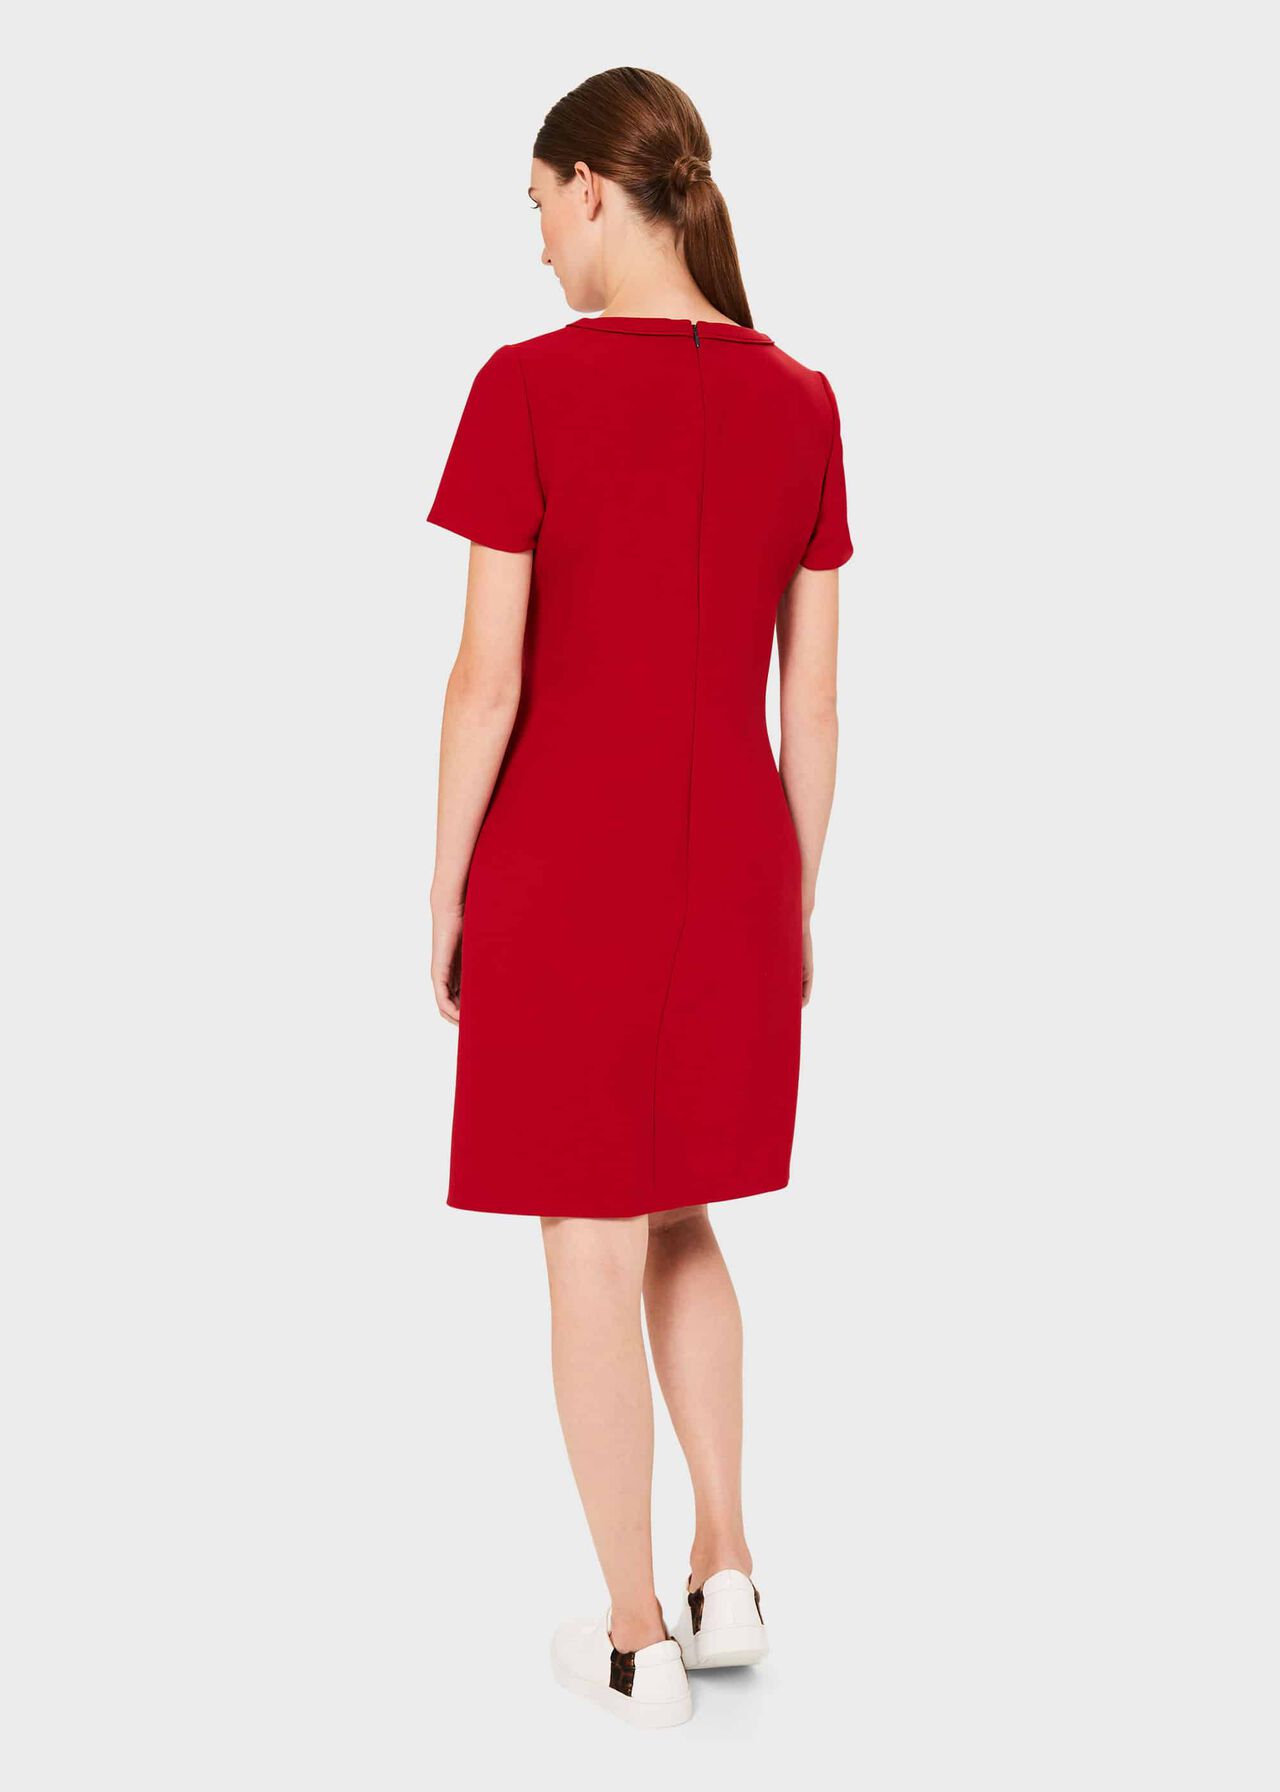 Petra Dress, Red, hi-res